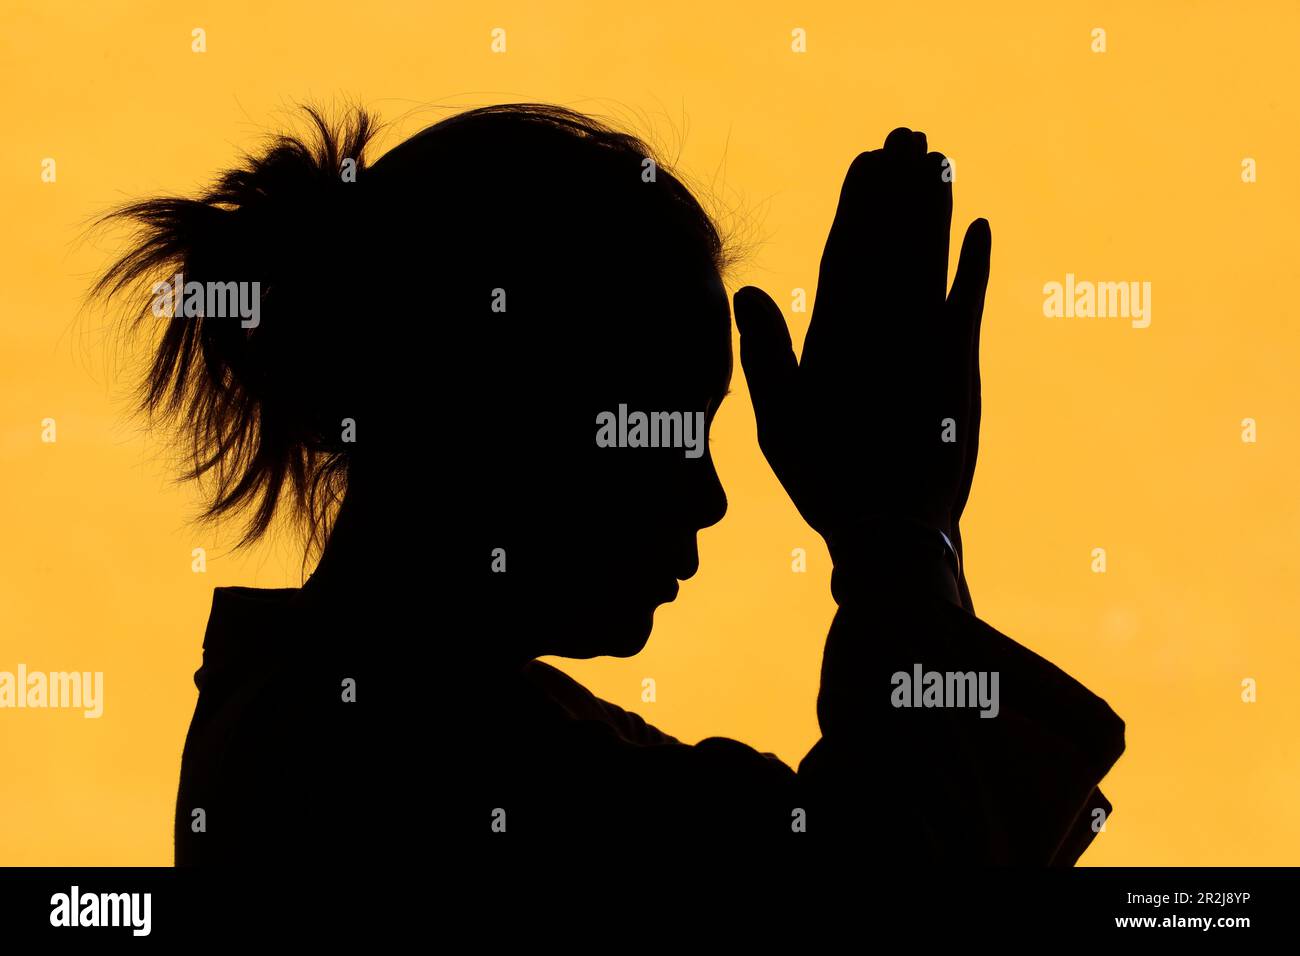 Silhouette de femme priant dans le concept de foi et de spiritualité du temple, Vietnam, Indochine, Asie du Sud-est, Asie Banque D'Images